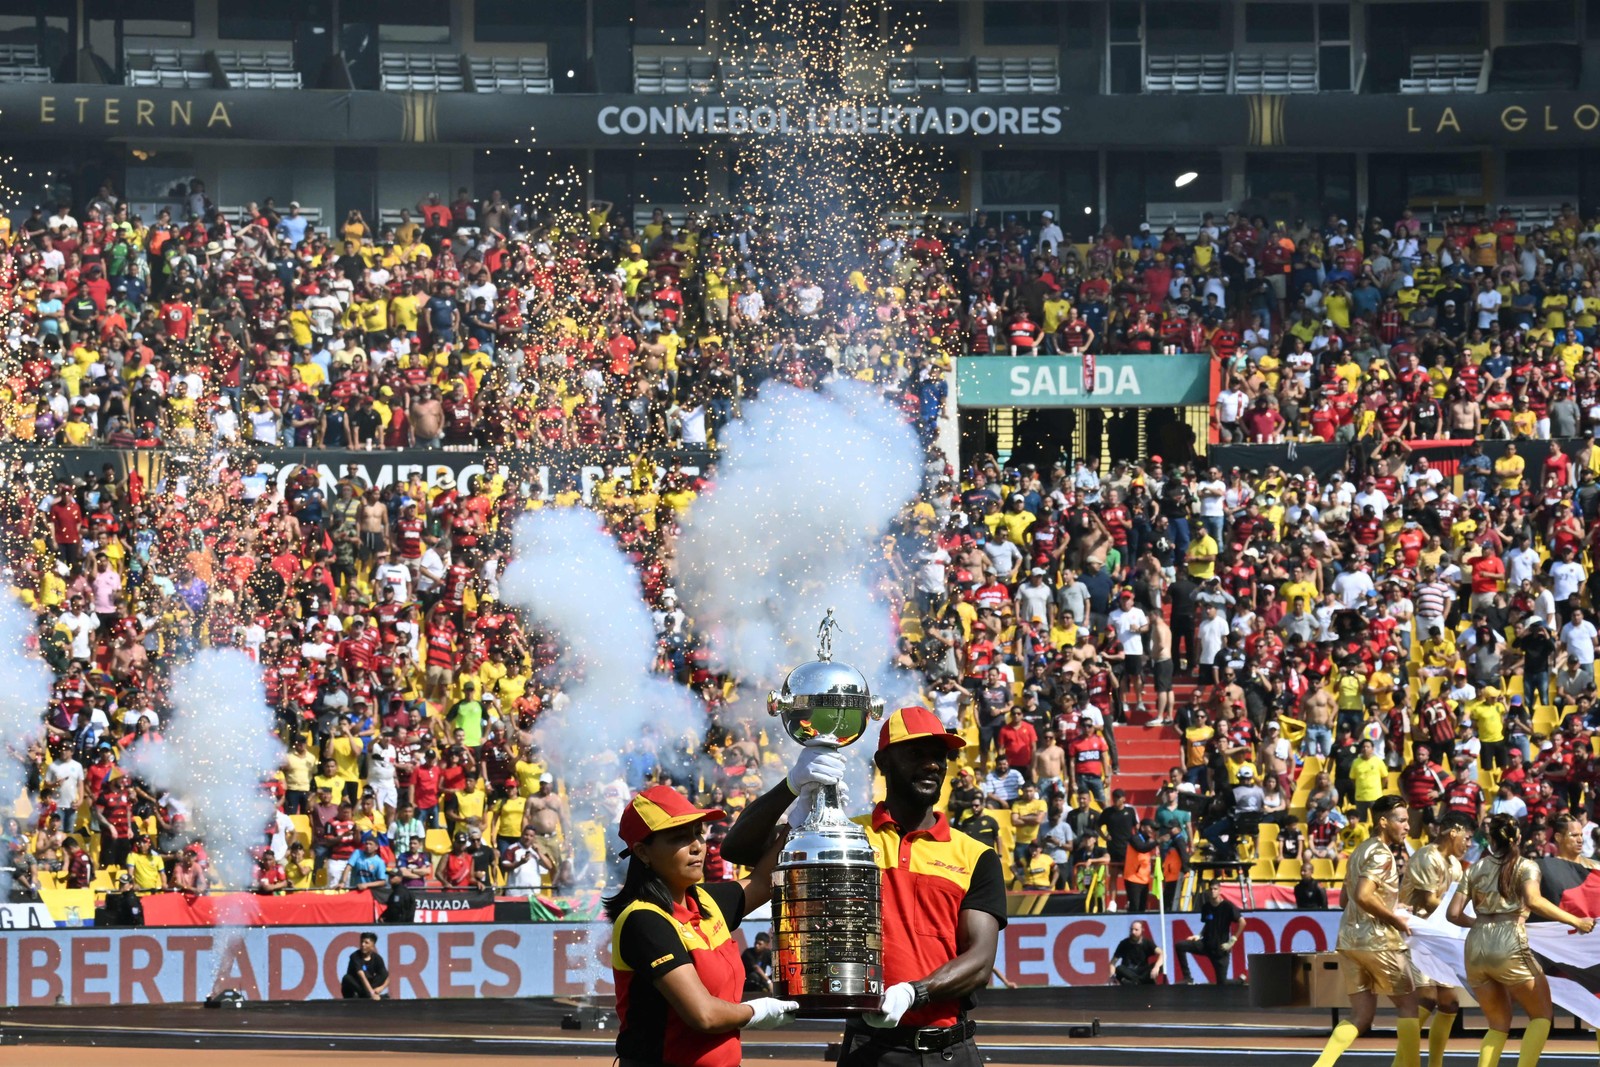 Torcidas se empolgam com a taça da Libertadores — Foto: Luis Acosta/AFP